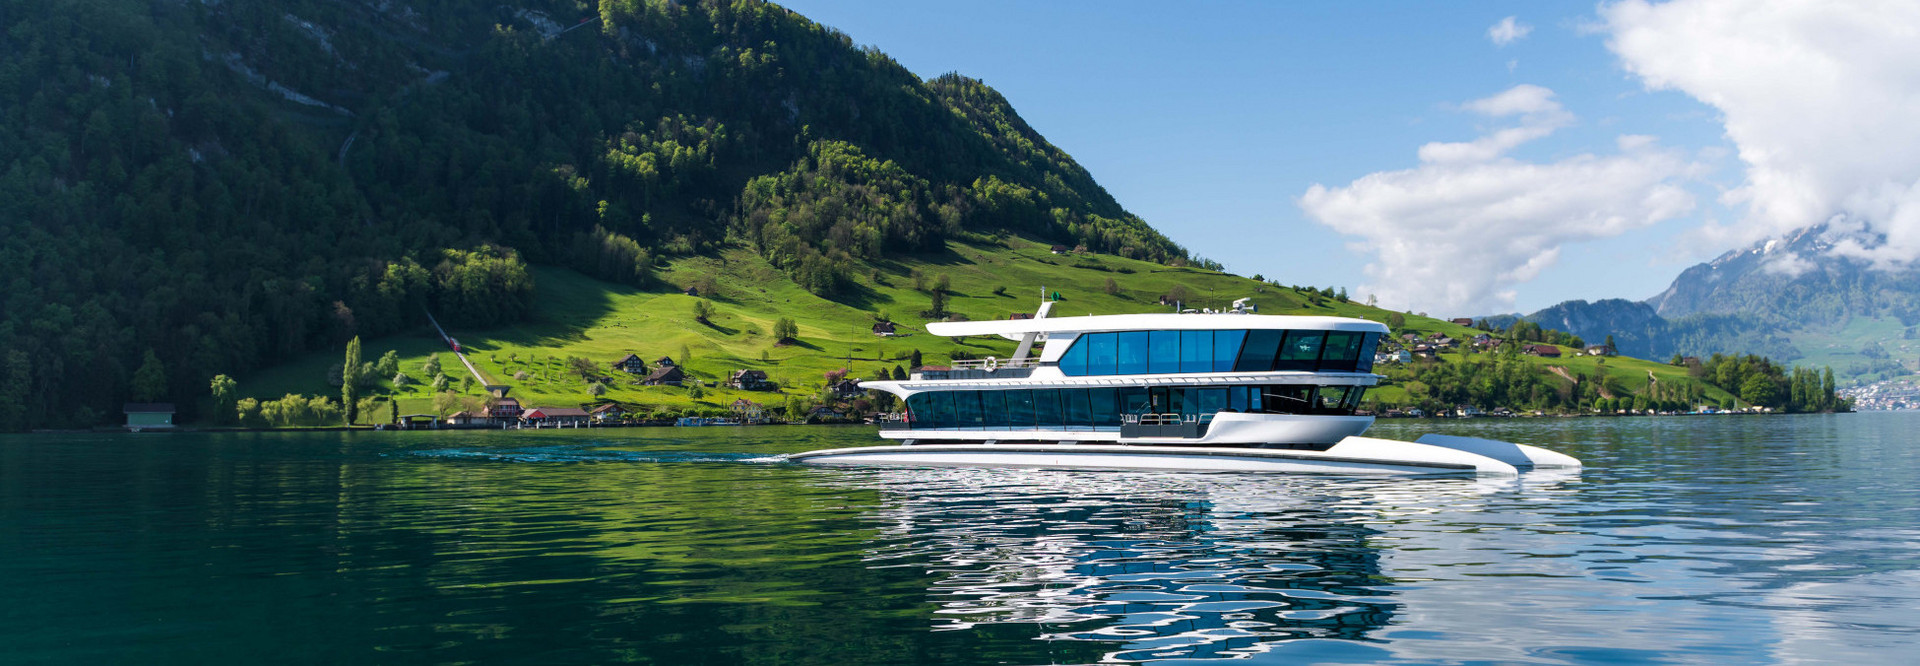 Le bateau à moteur Bürgenstock navigue vers Lucerne par une belle journée d'été.